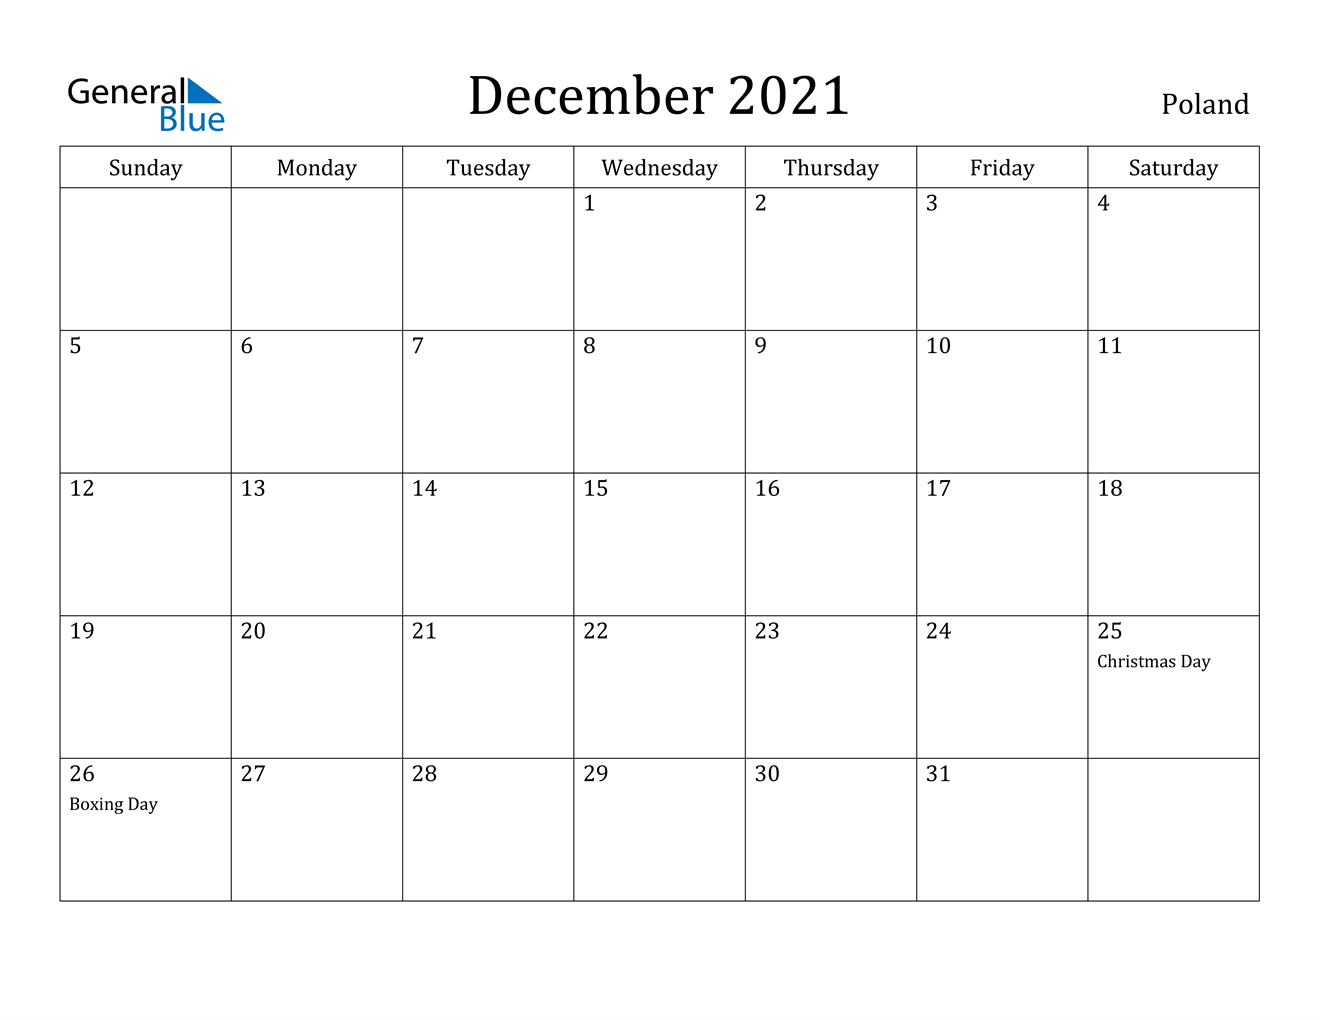 December 2021 Calendar - Poland Calendar 2021 January To December Pdf